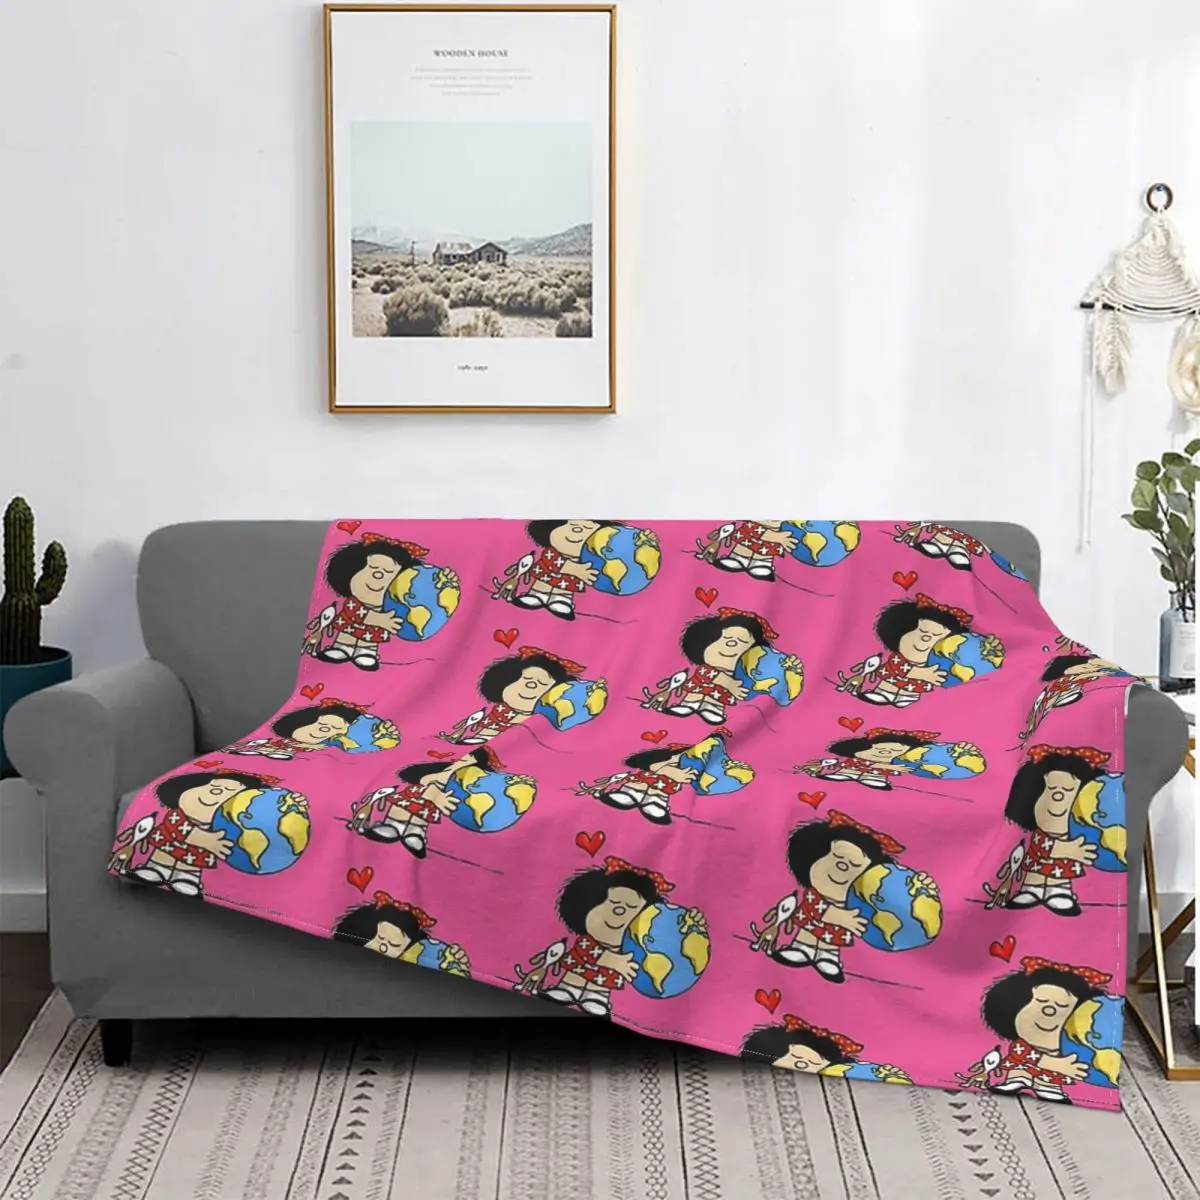 

Mafalda мигелито комикс одеяла коралловый флис брикет постельное белье для спальни покрывало